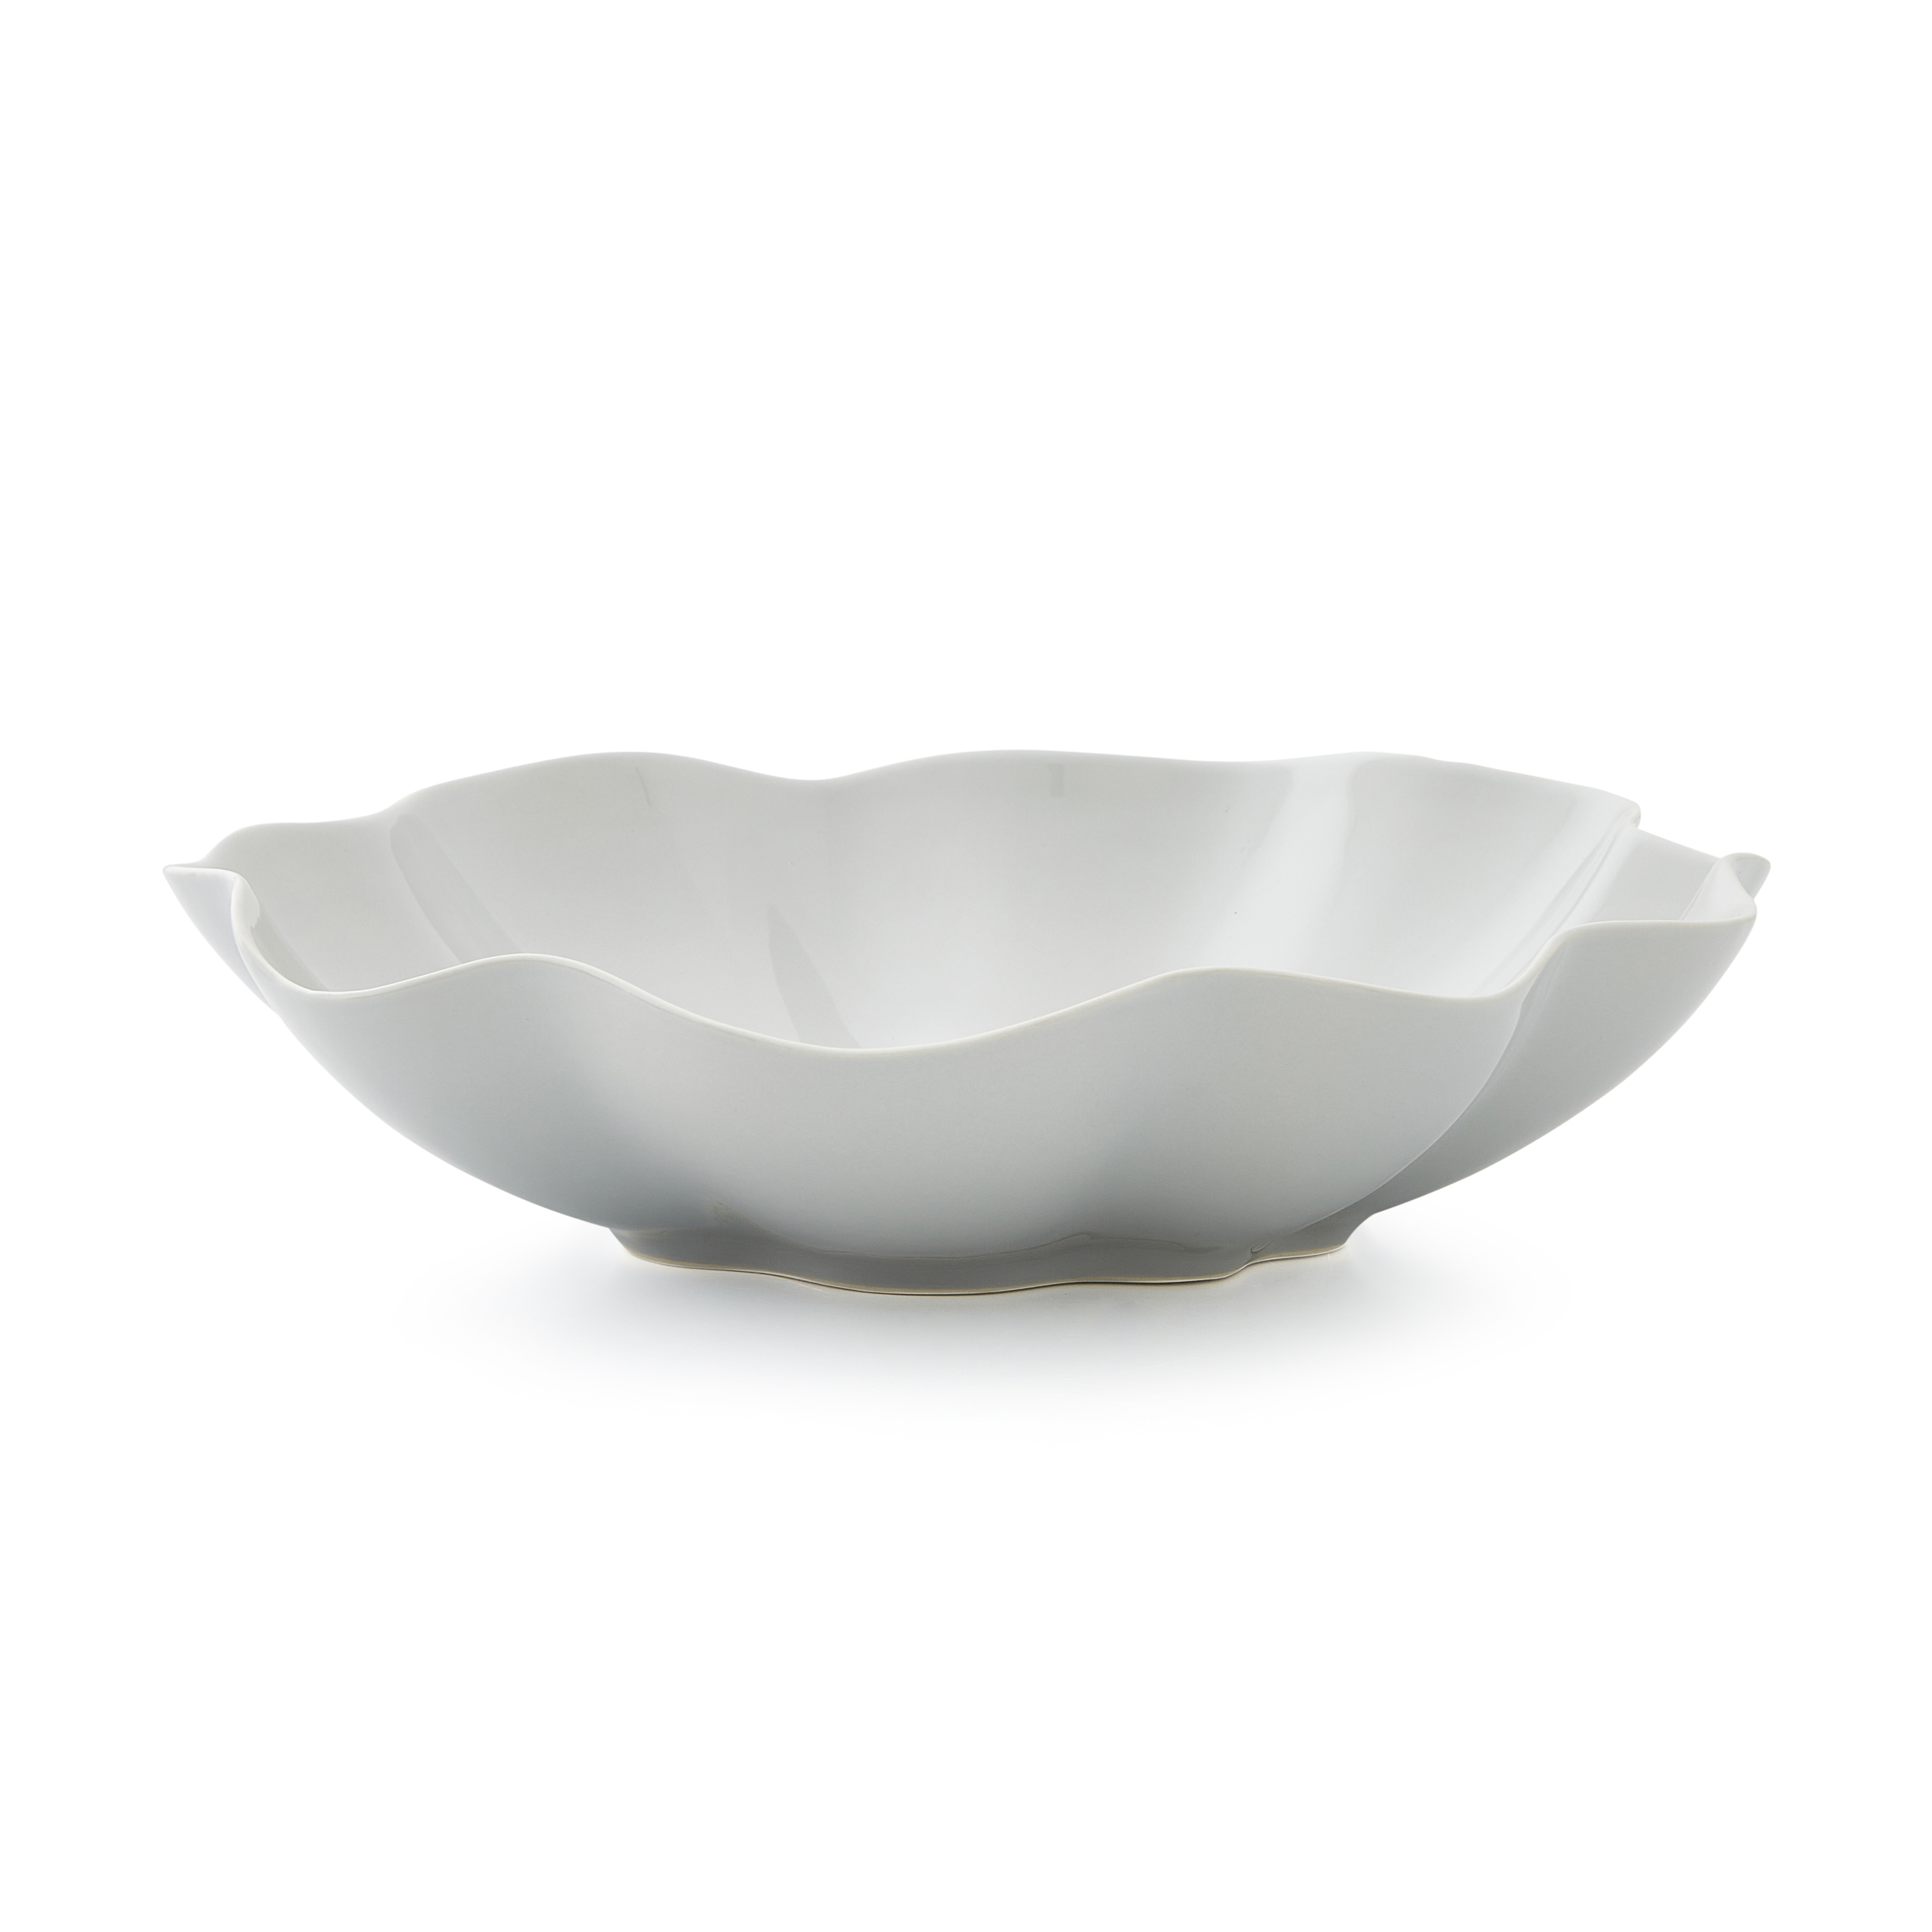 Sophie Conran Floret Large Serving Bowl, Grey image number null